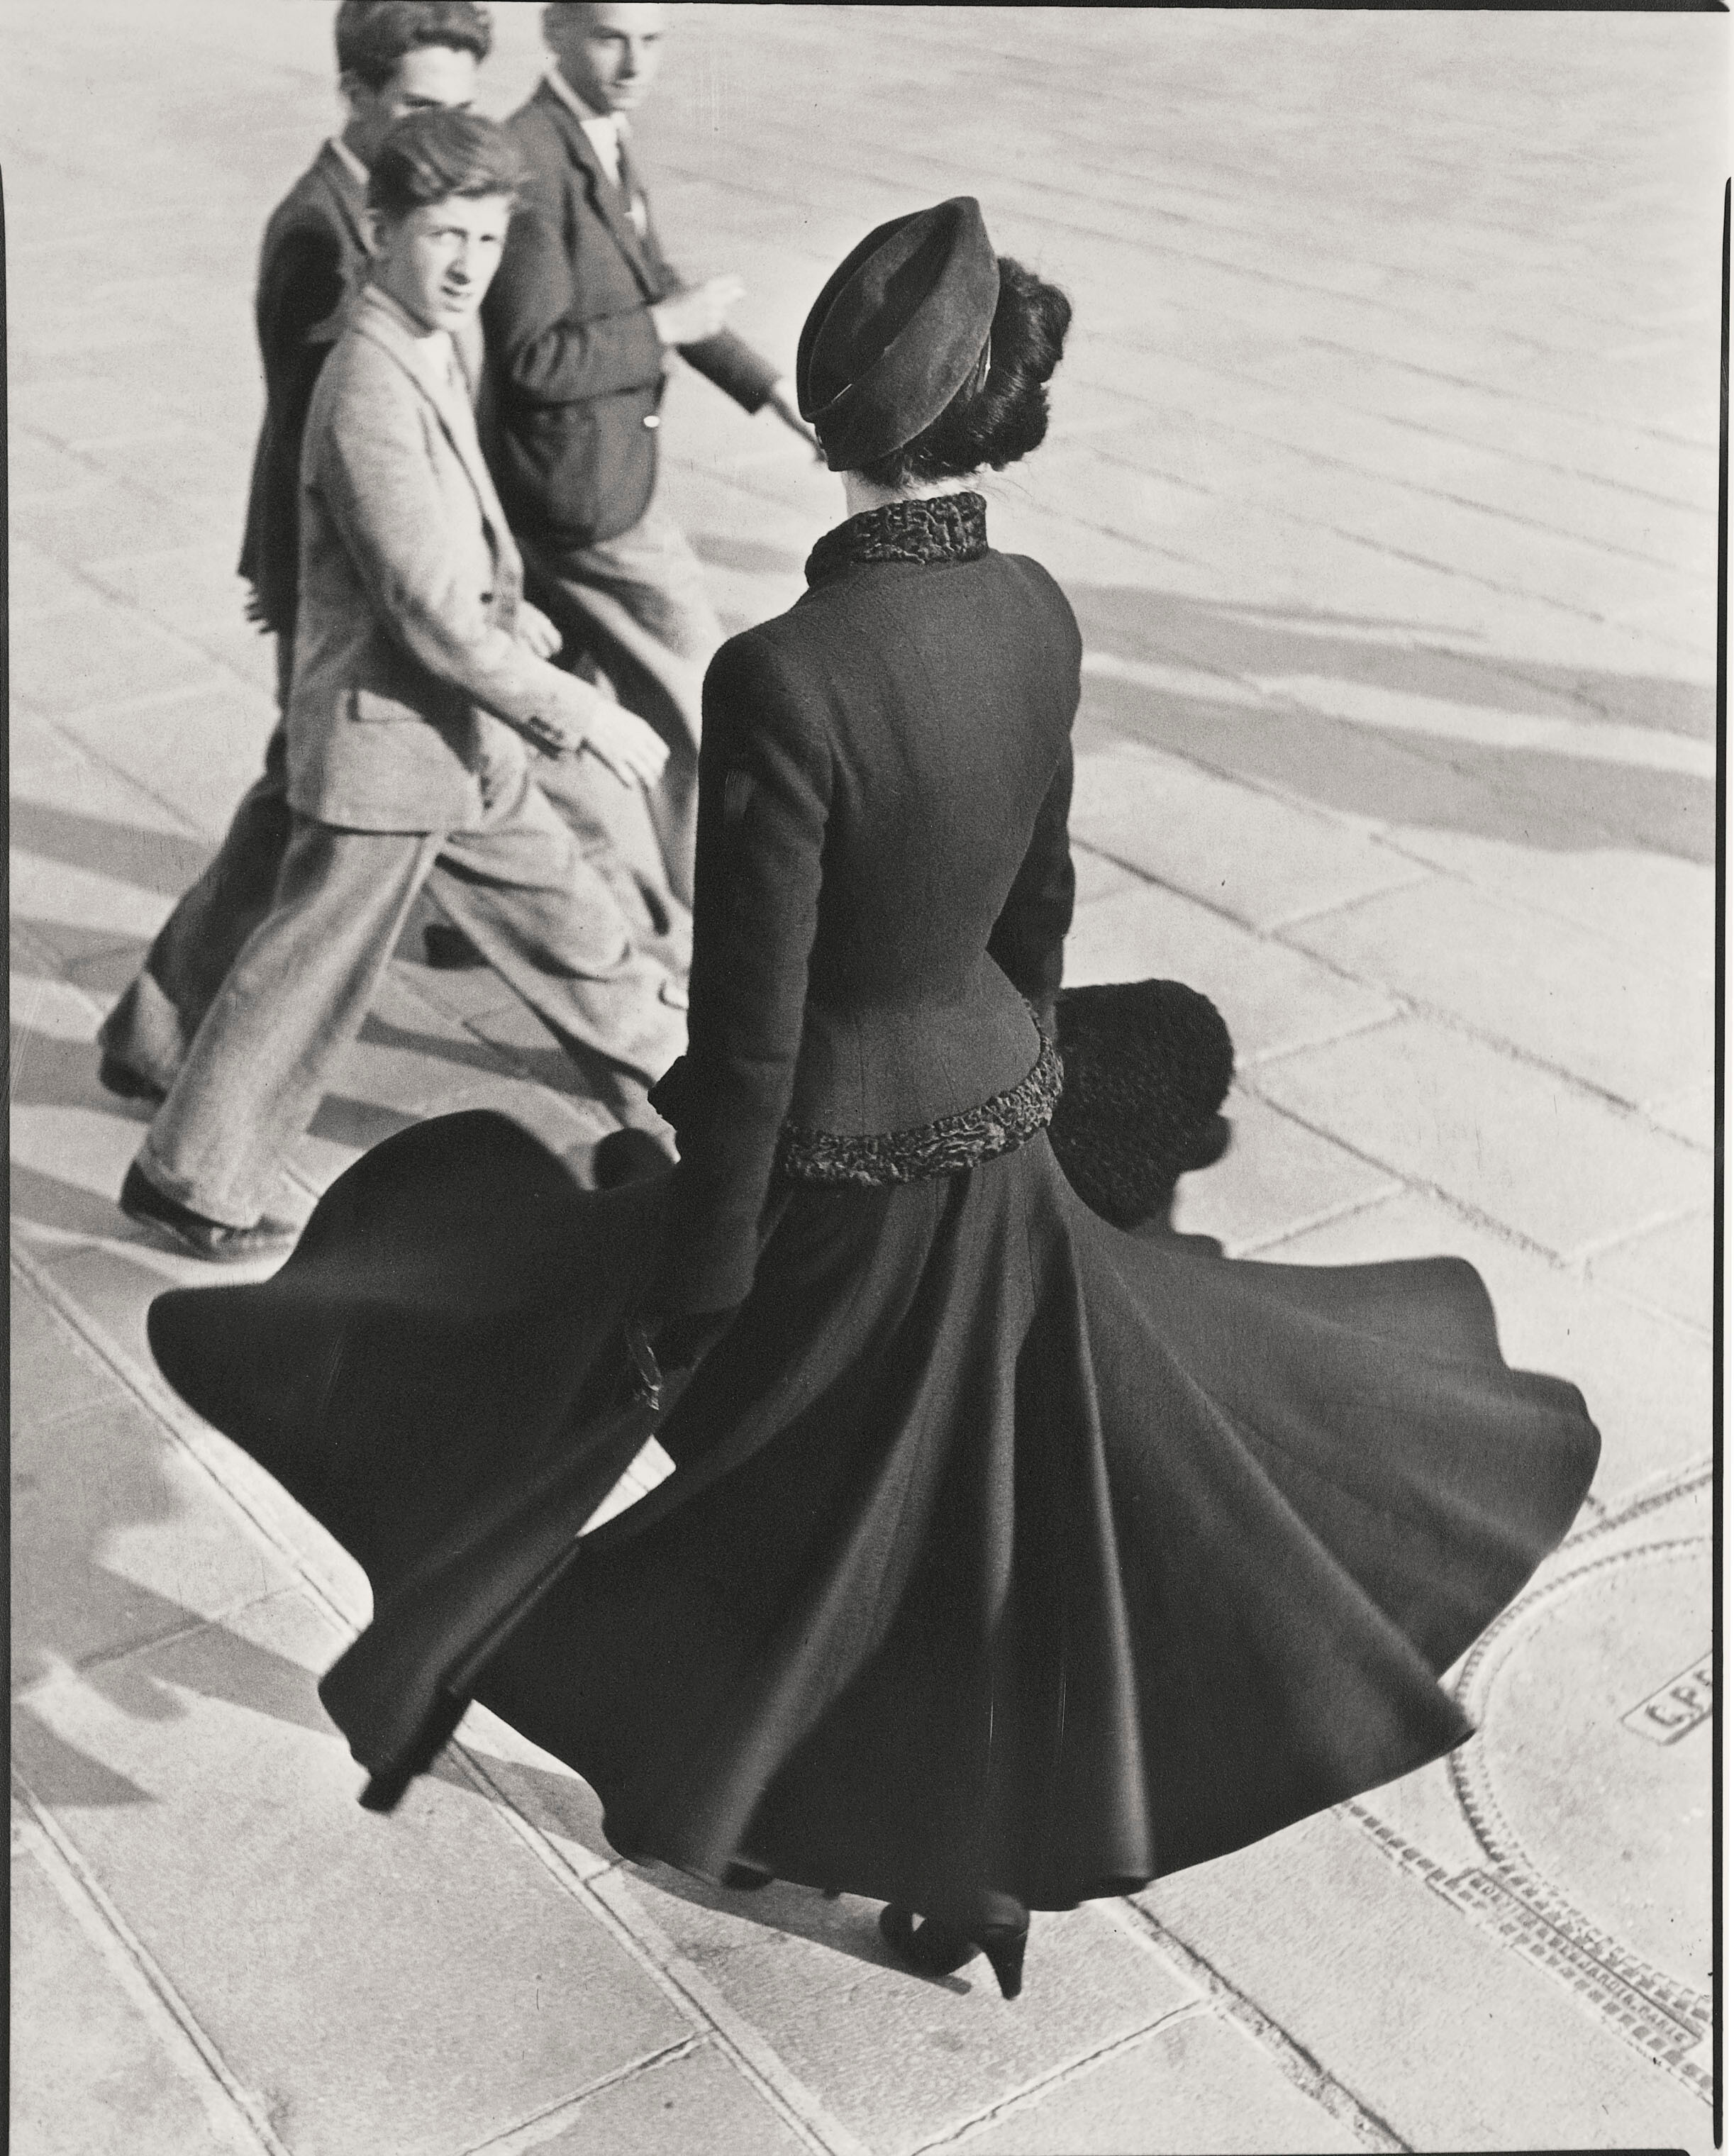 Рене, Новый взгляд Диора, площадь Согласия, Париж, август 1947 г.  Фотограф Ричард Аведон